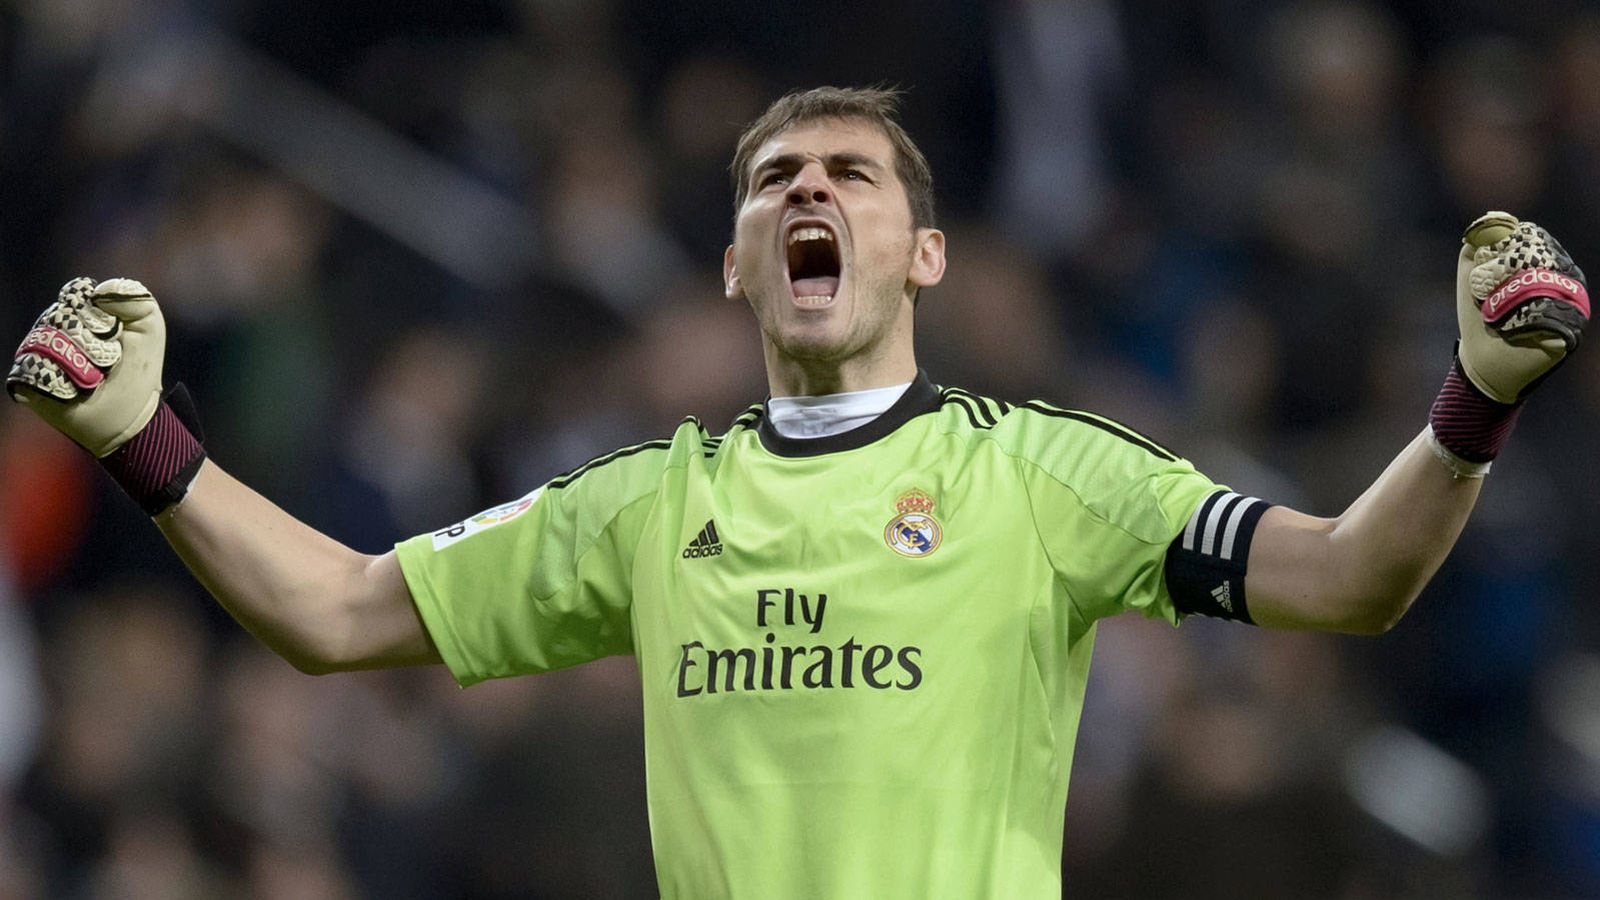 Foto: Iker Casillas celebra una victoria durante su etapa en el Real Madrid. (Reuters)